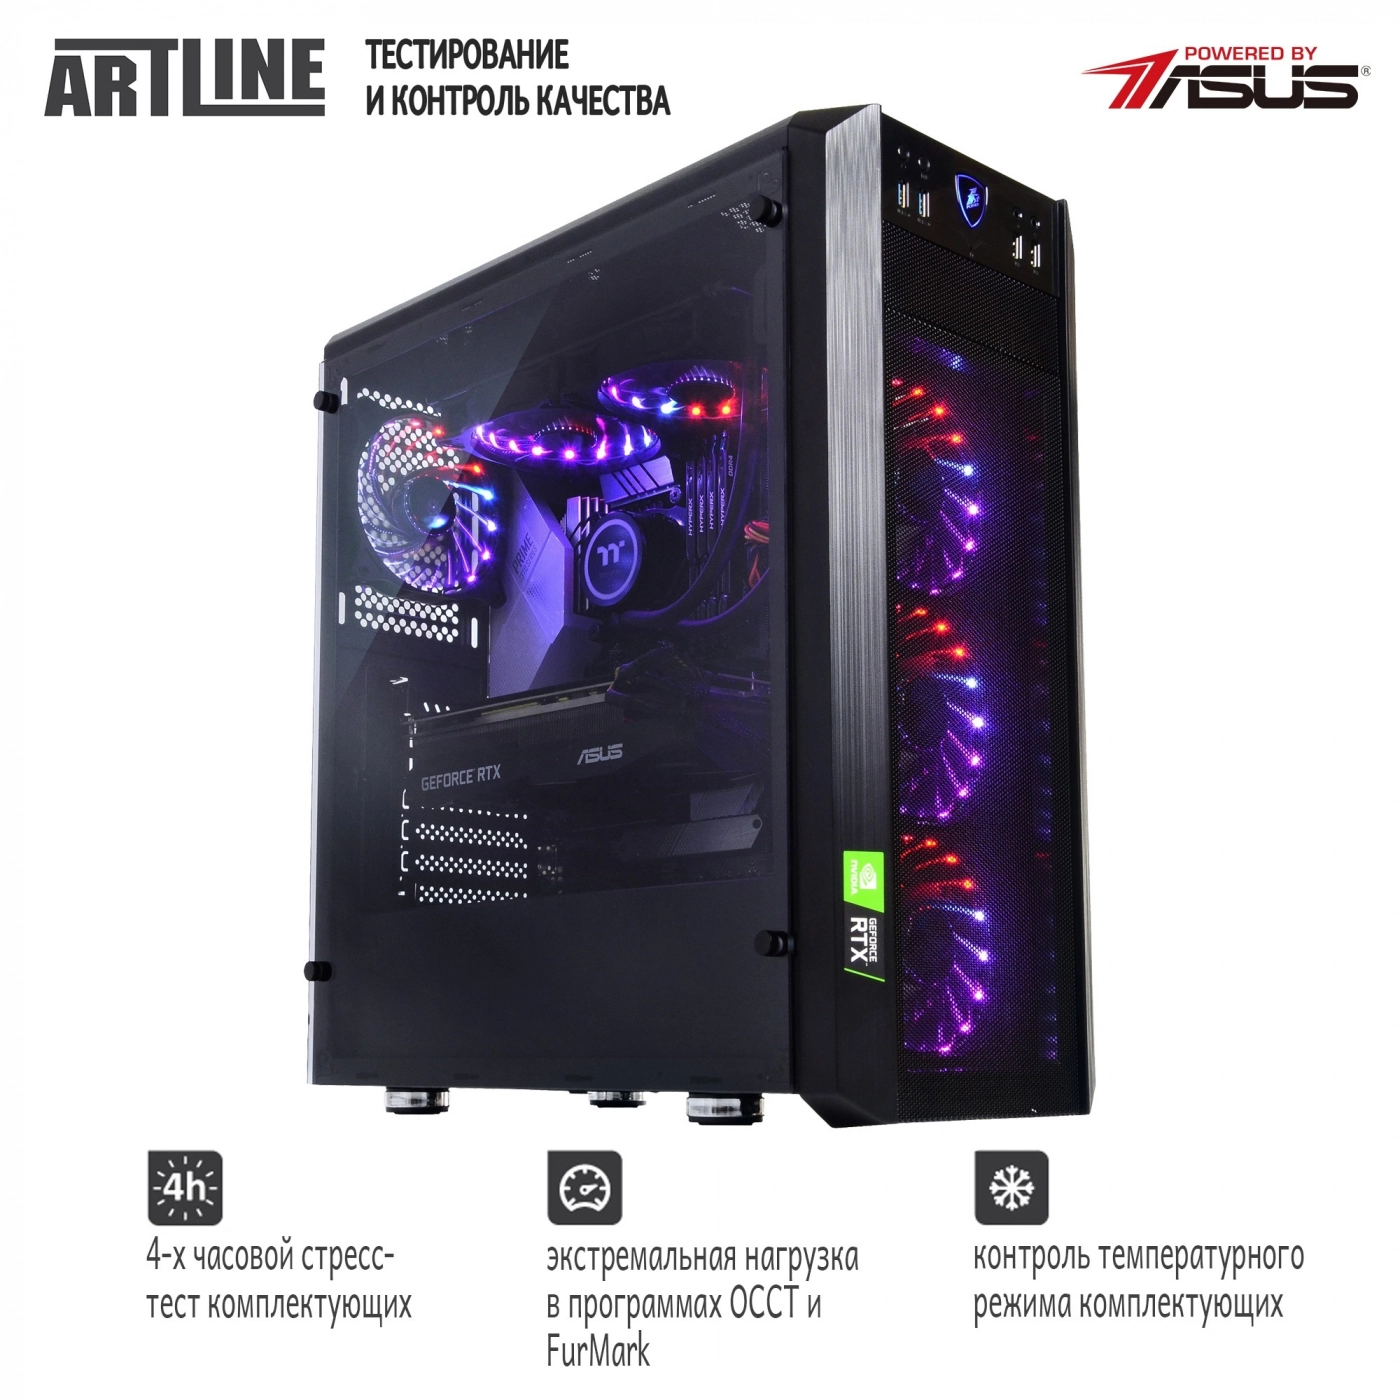 Купить Компьютер ARTLINE Gaming X94v16 - фото 7